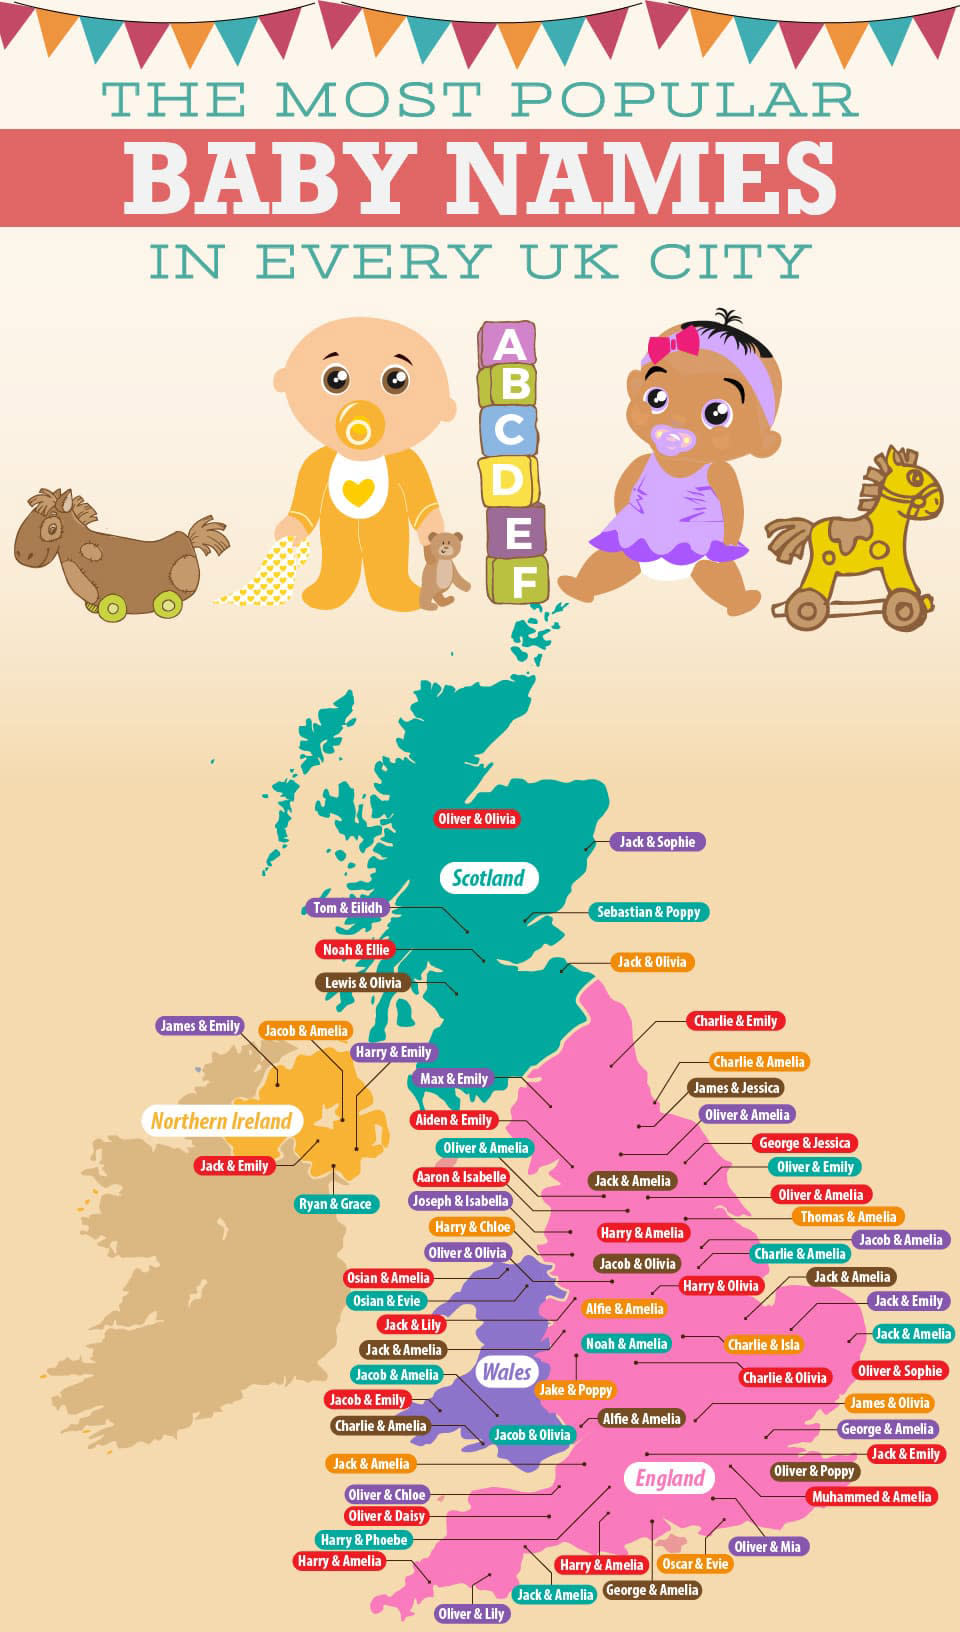 Baby names in UK cities